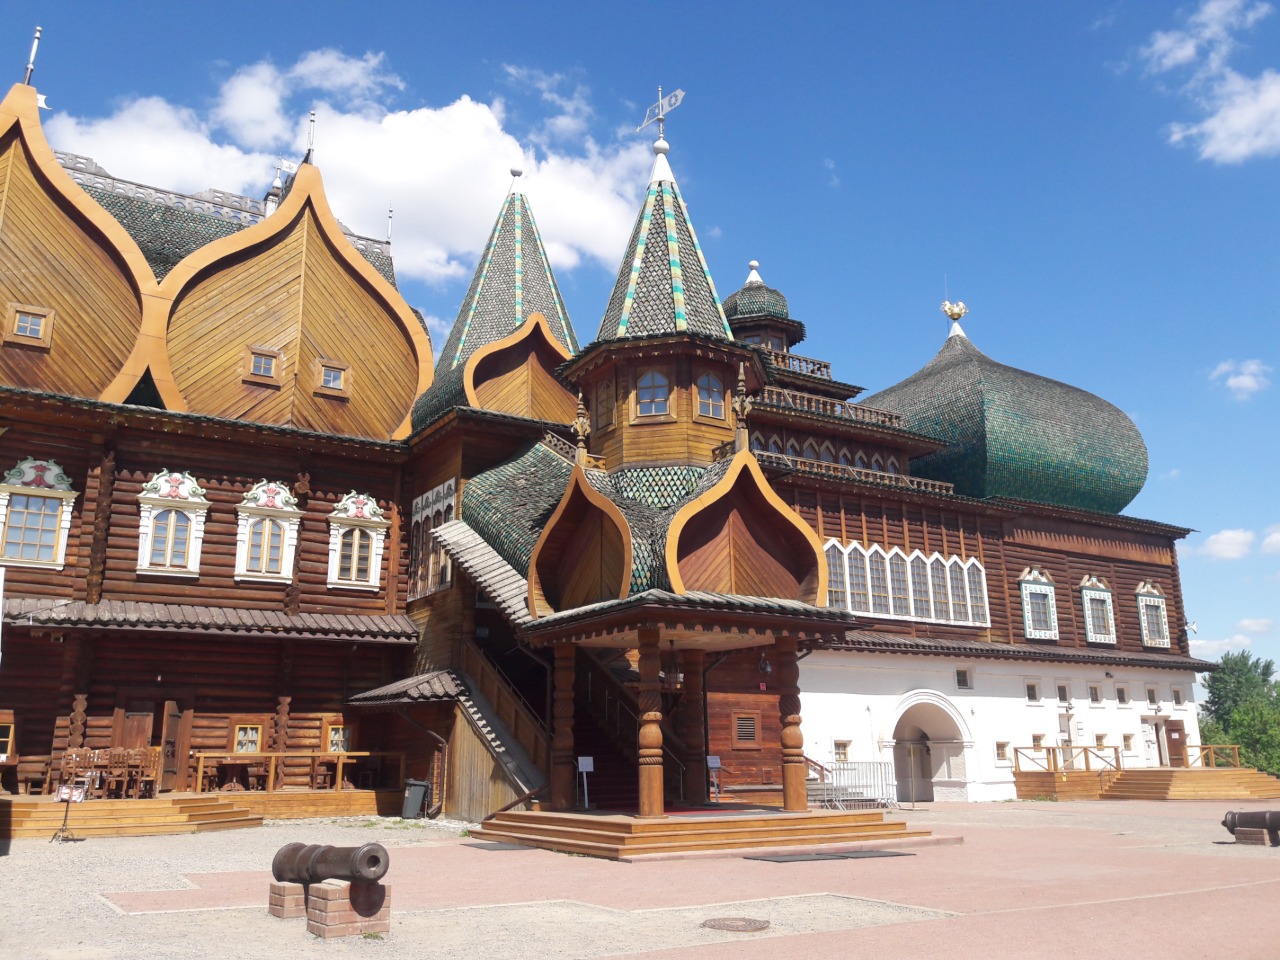  Дворец Алексея Михайловича в Коломенском | Цена 4800₽, отзывы, описание экскурсии